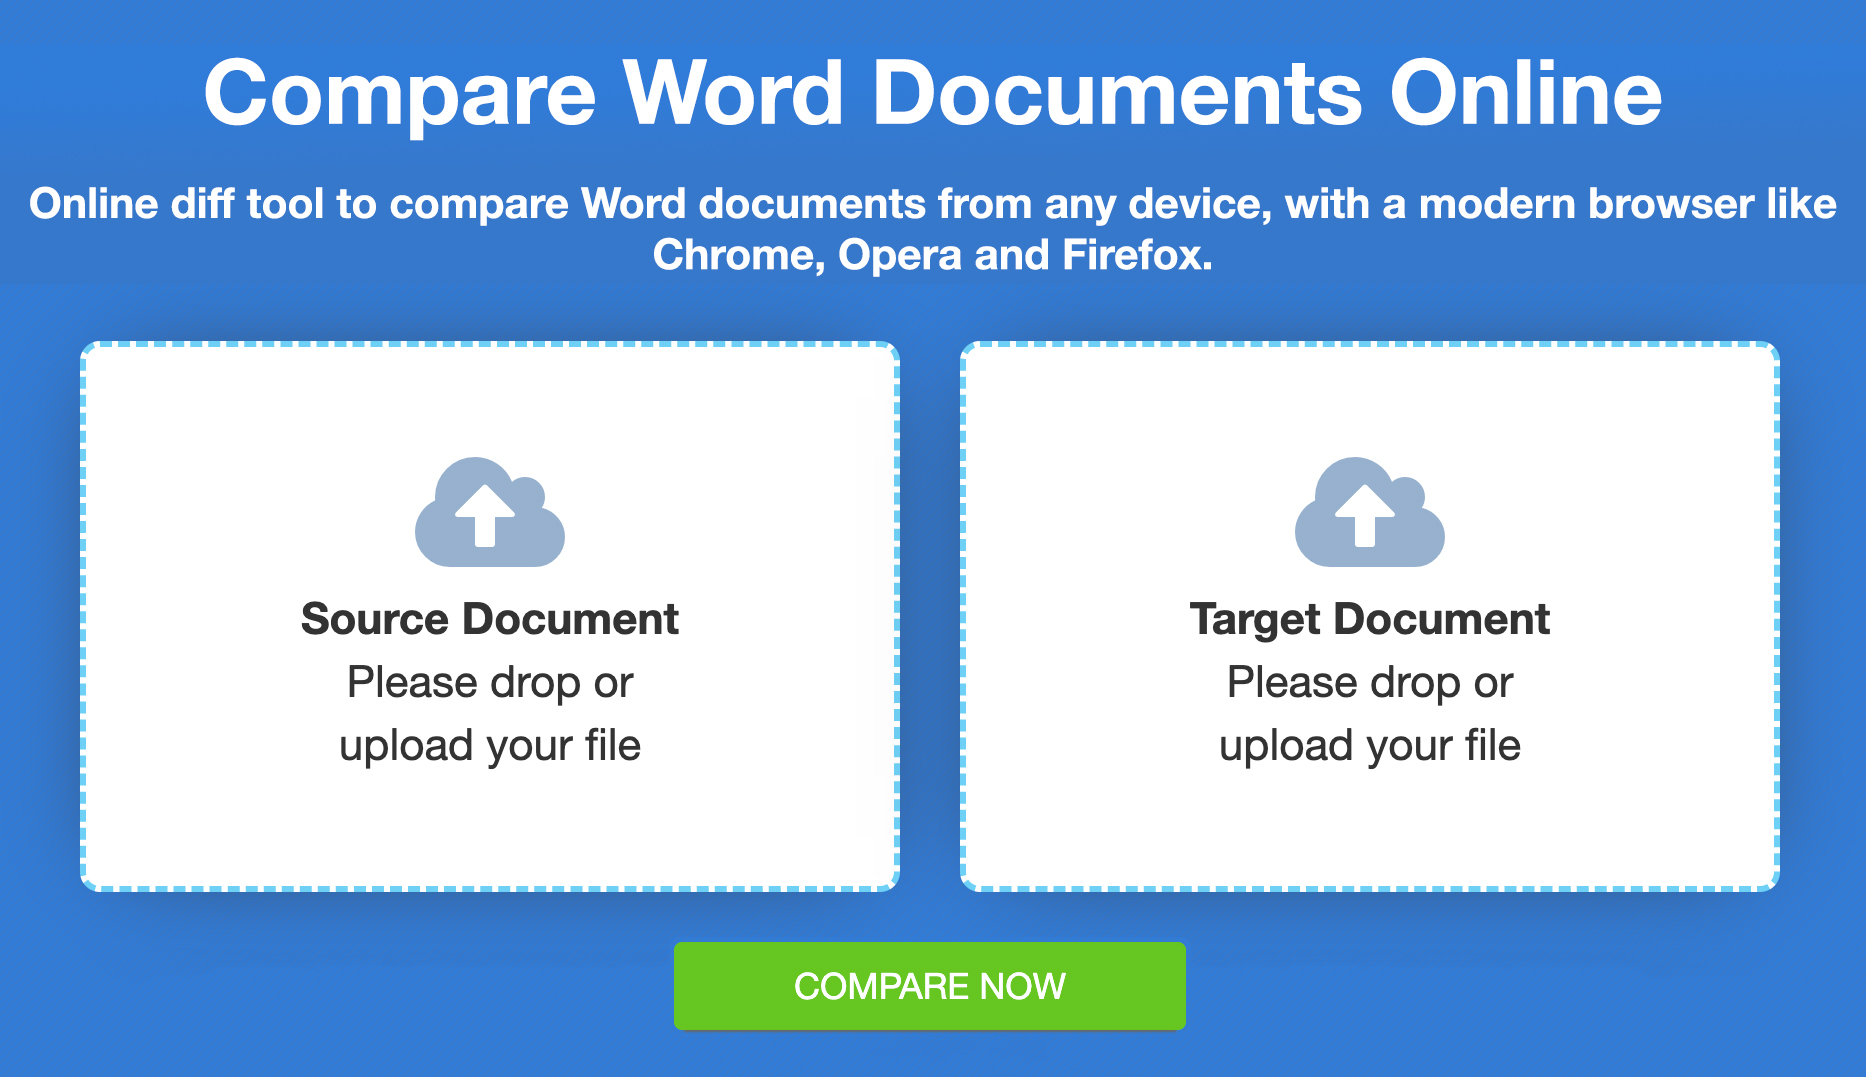 Porównaj pliki Word — bezpłatne porównanie online